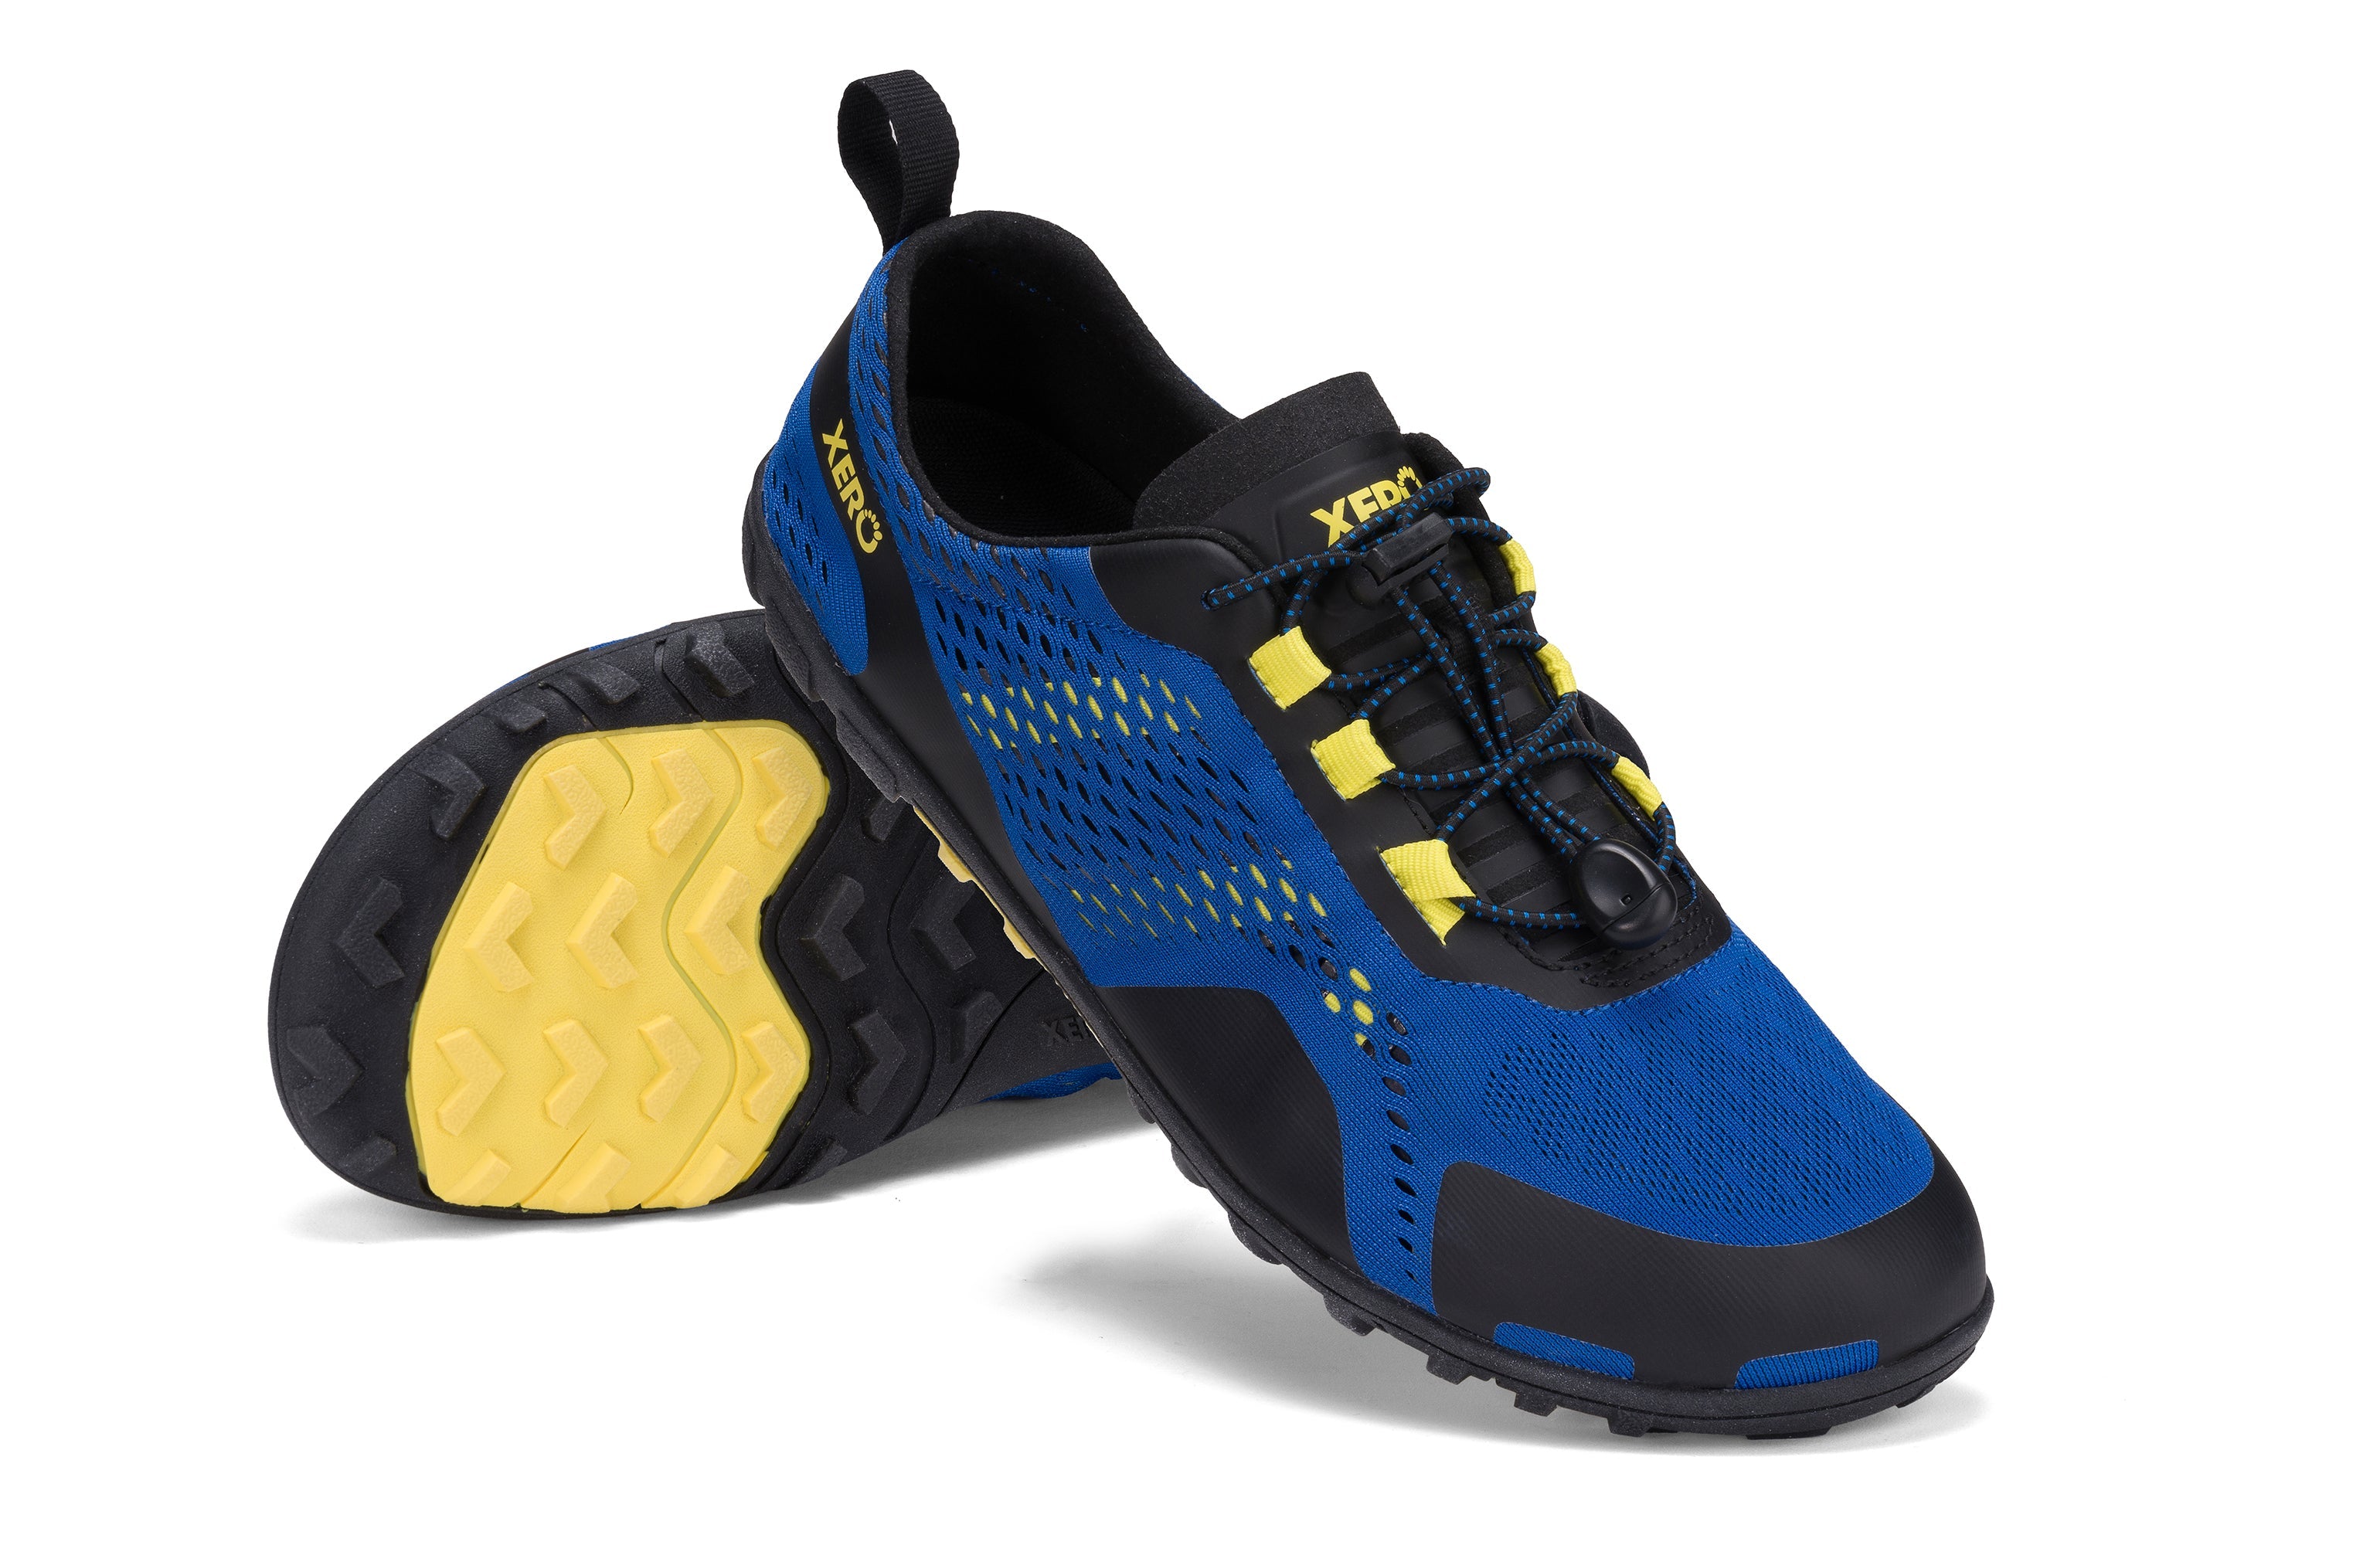 Xero Shoes Aqua X Sport barfods vand træningssko til mænd i farven blue / yellow, par